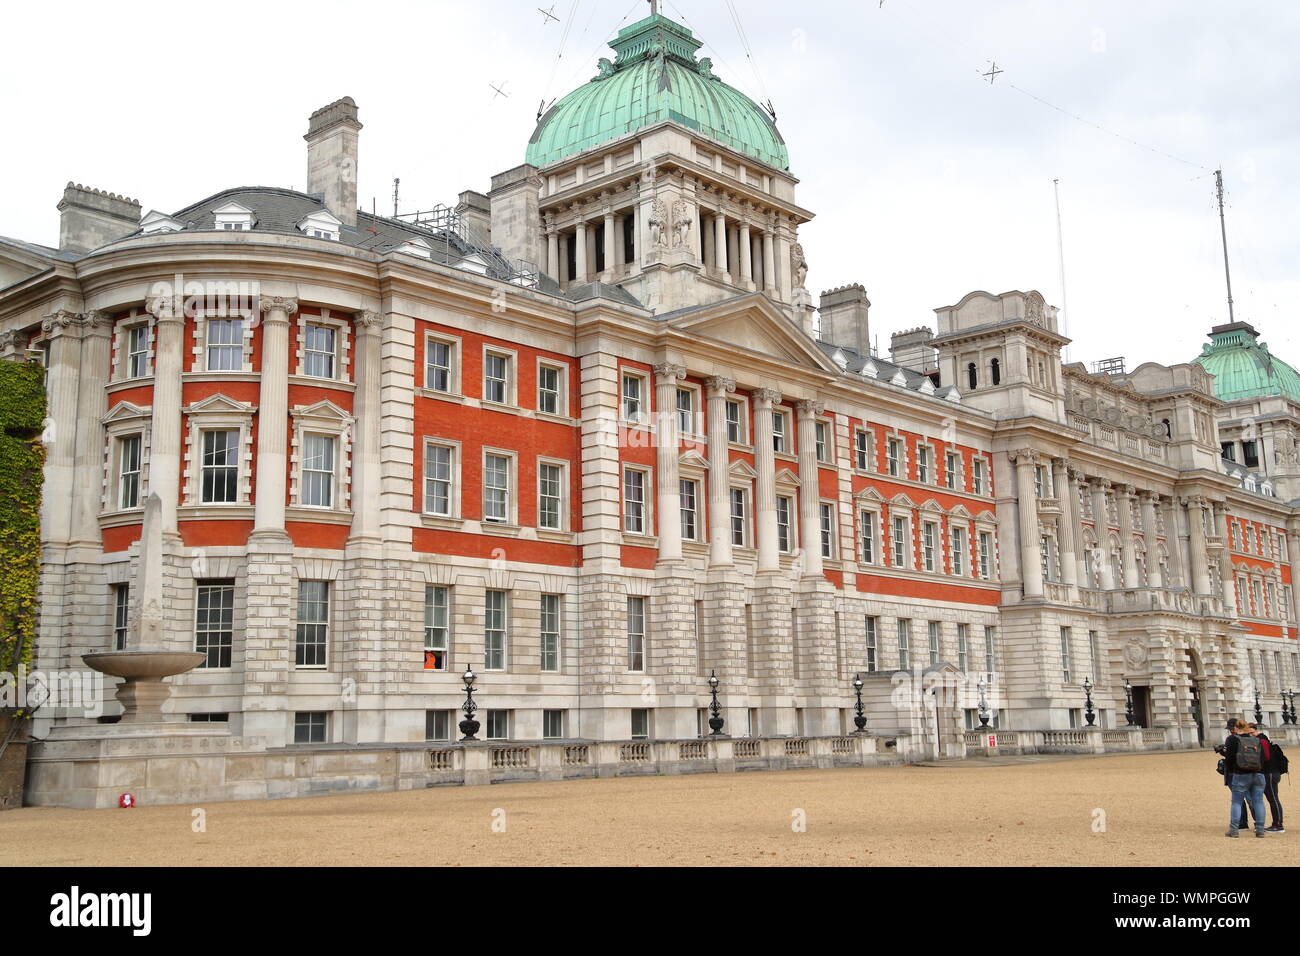 Ancien bâtiment de l'Amirauté, Horse Guards Parade, London, UK Banque D'Images